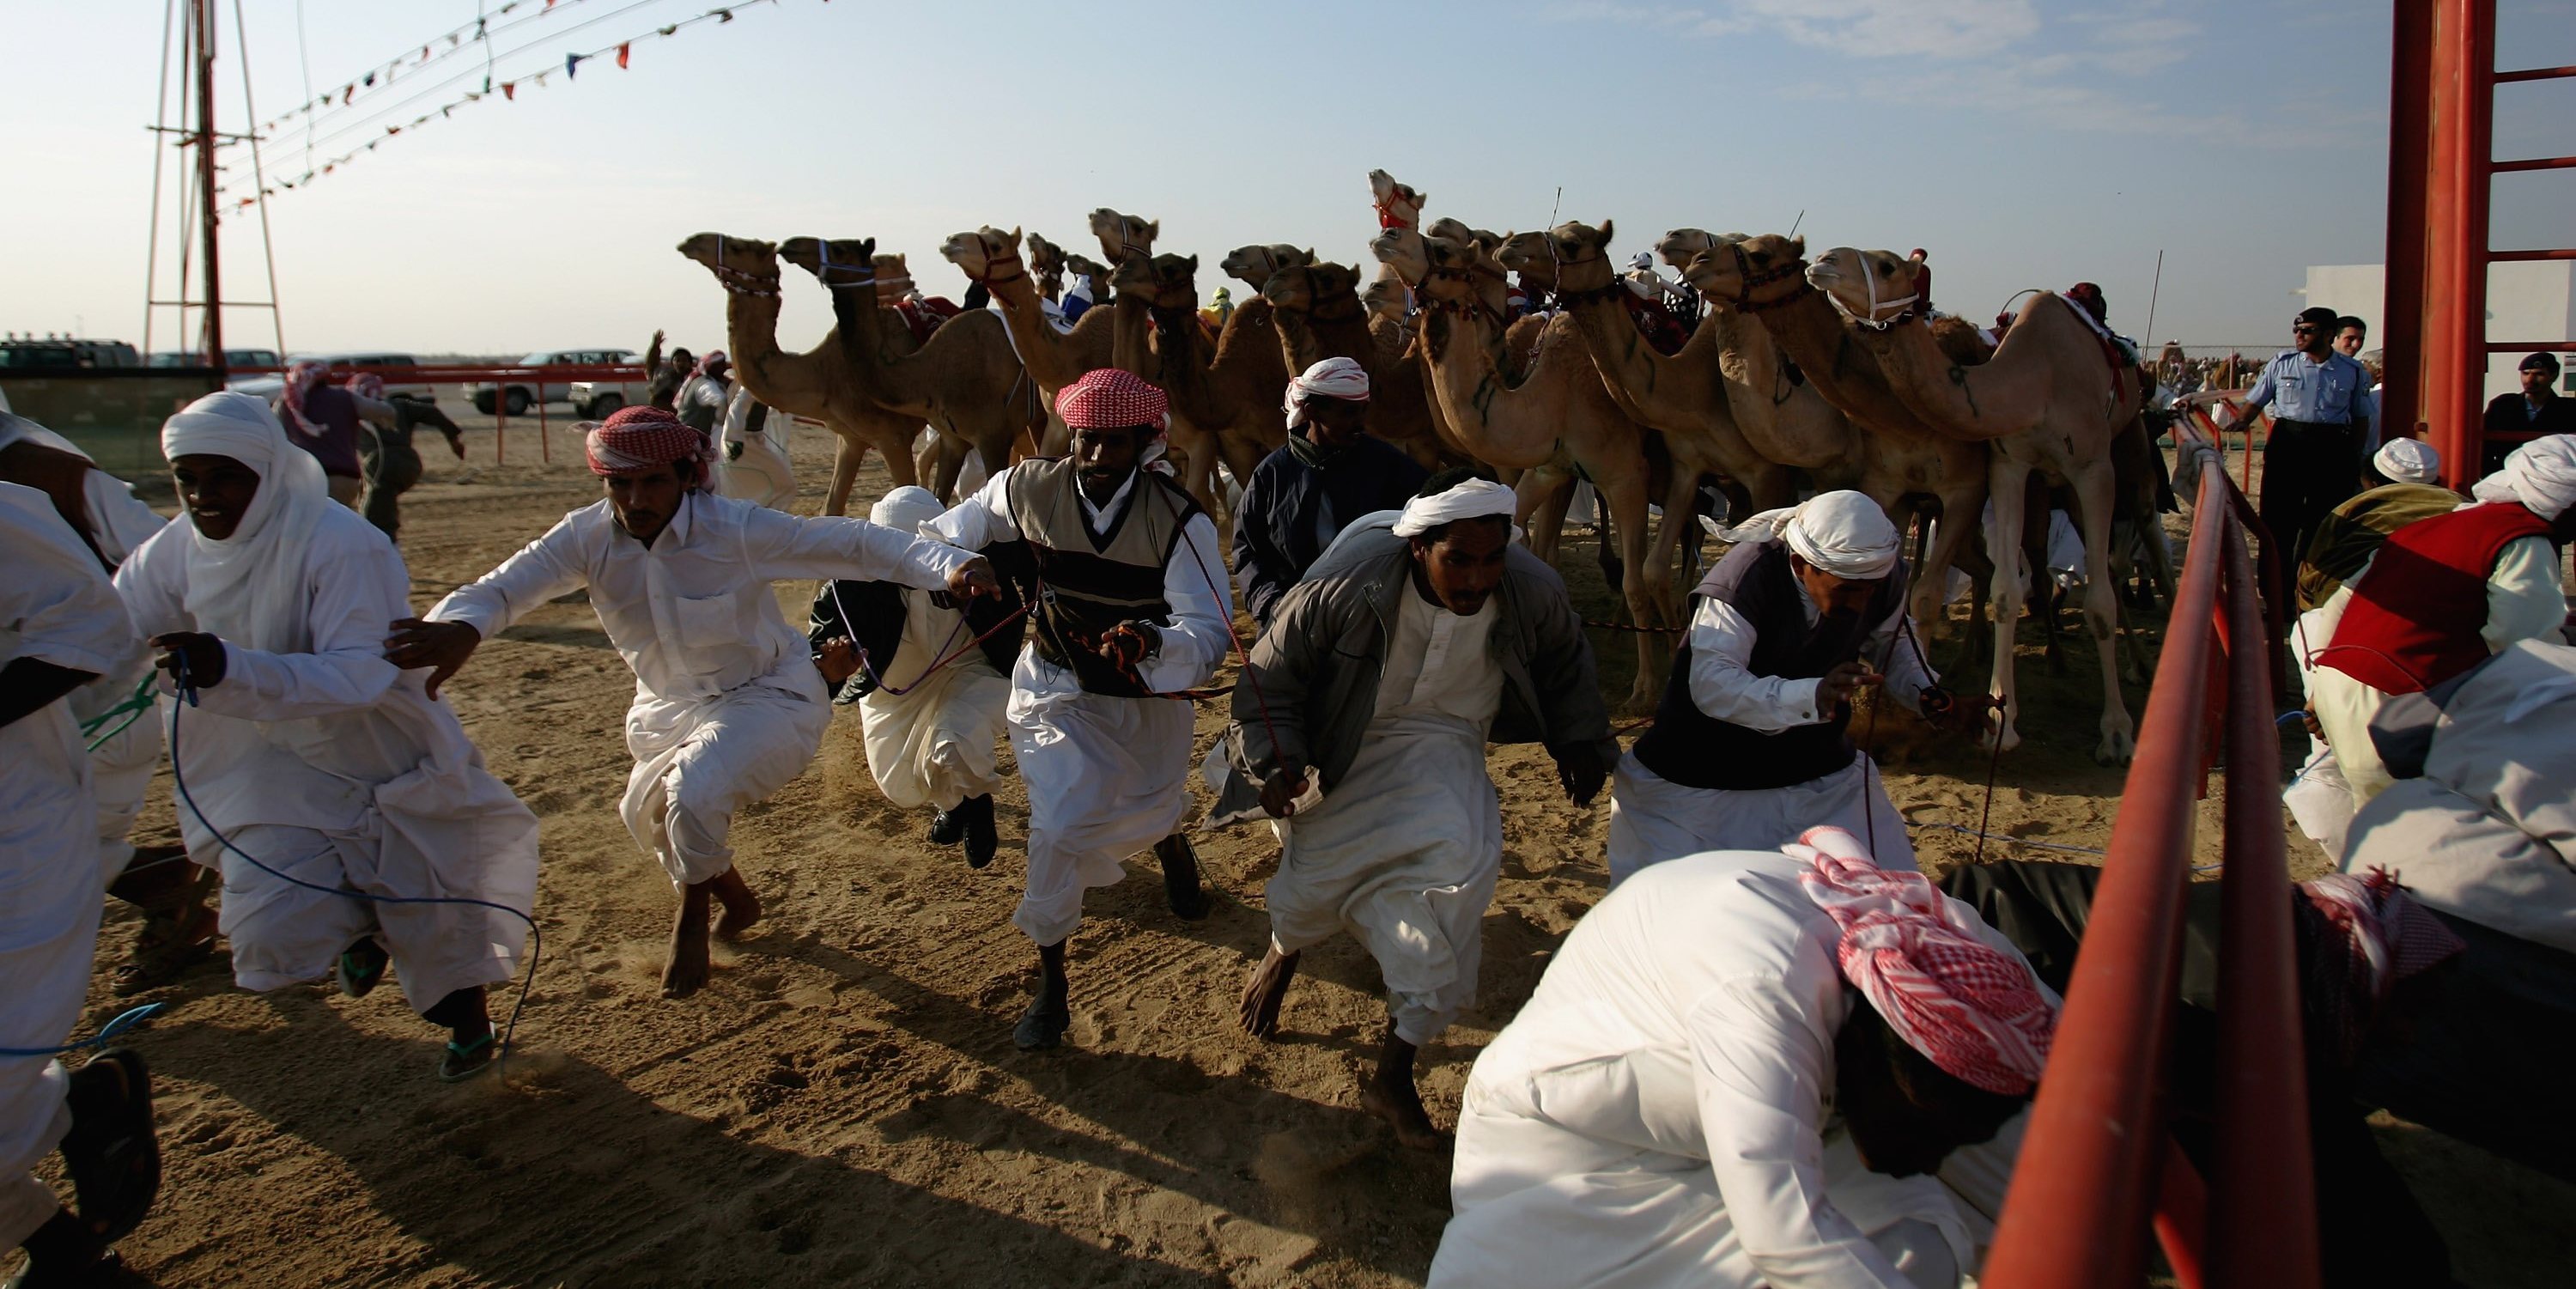 Bancada de luxo, prémios milionários, jockeys robôs, o craque Soda e demasiado café árabe um dia nas corridas de camelos no Qatar